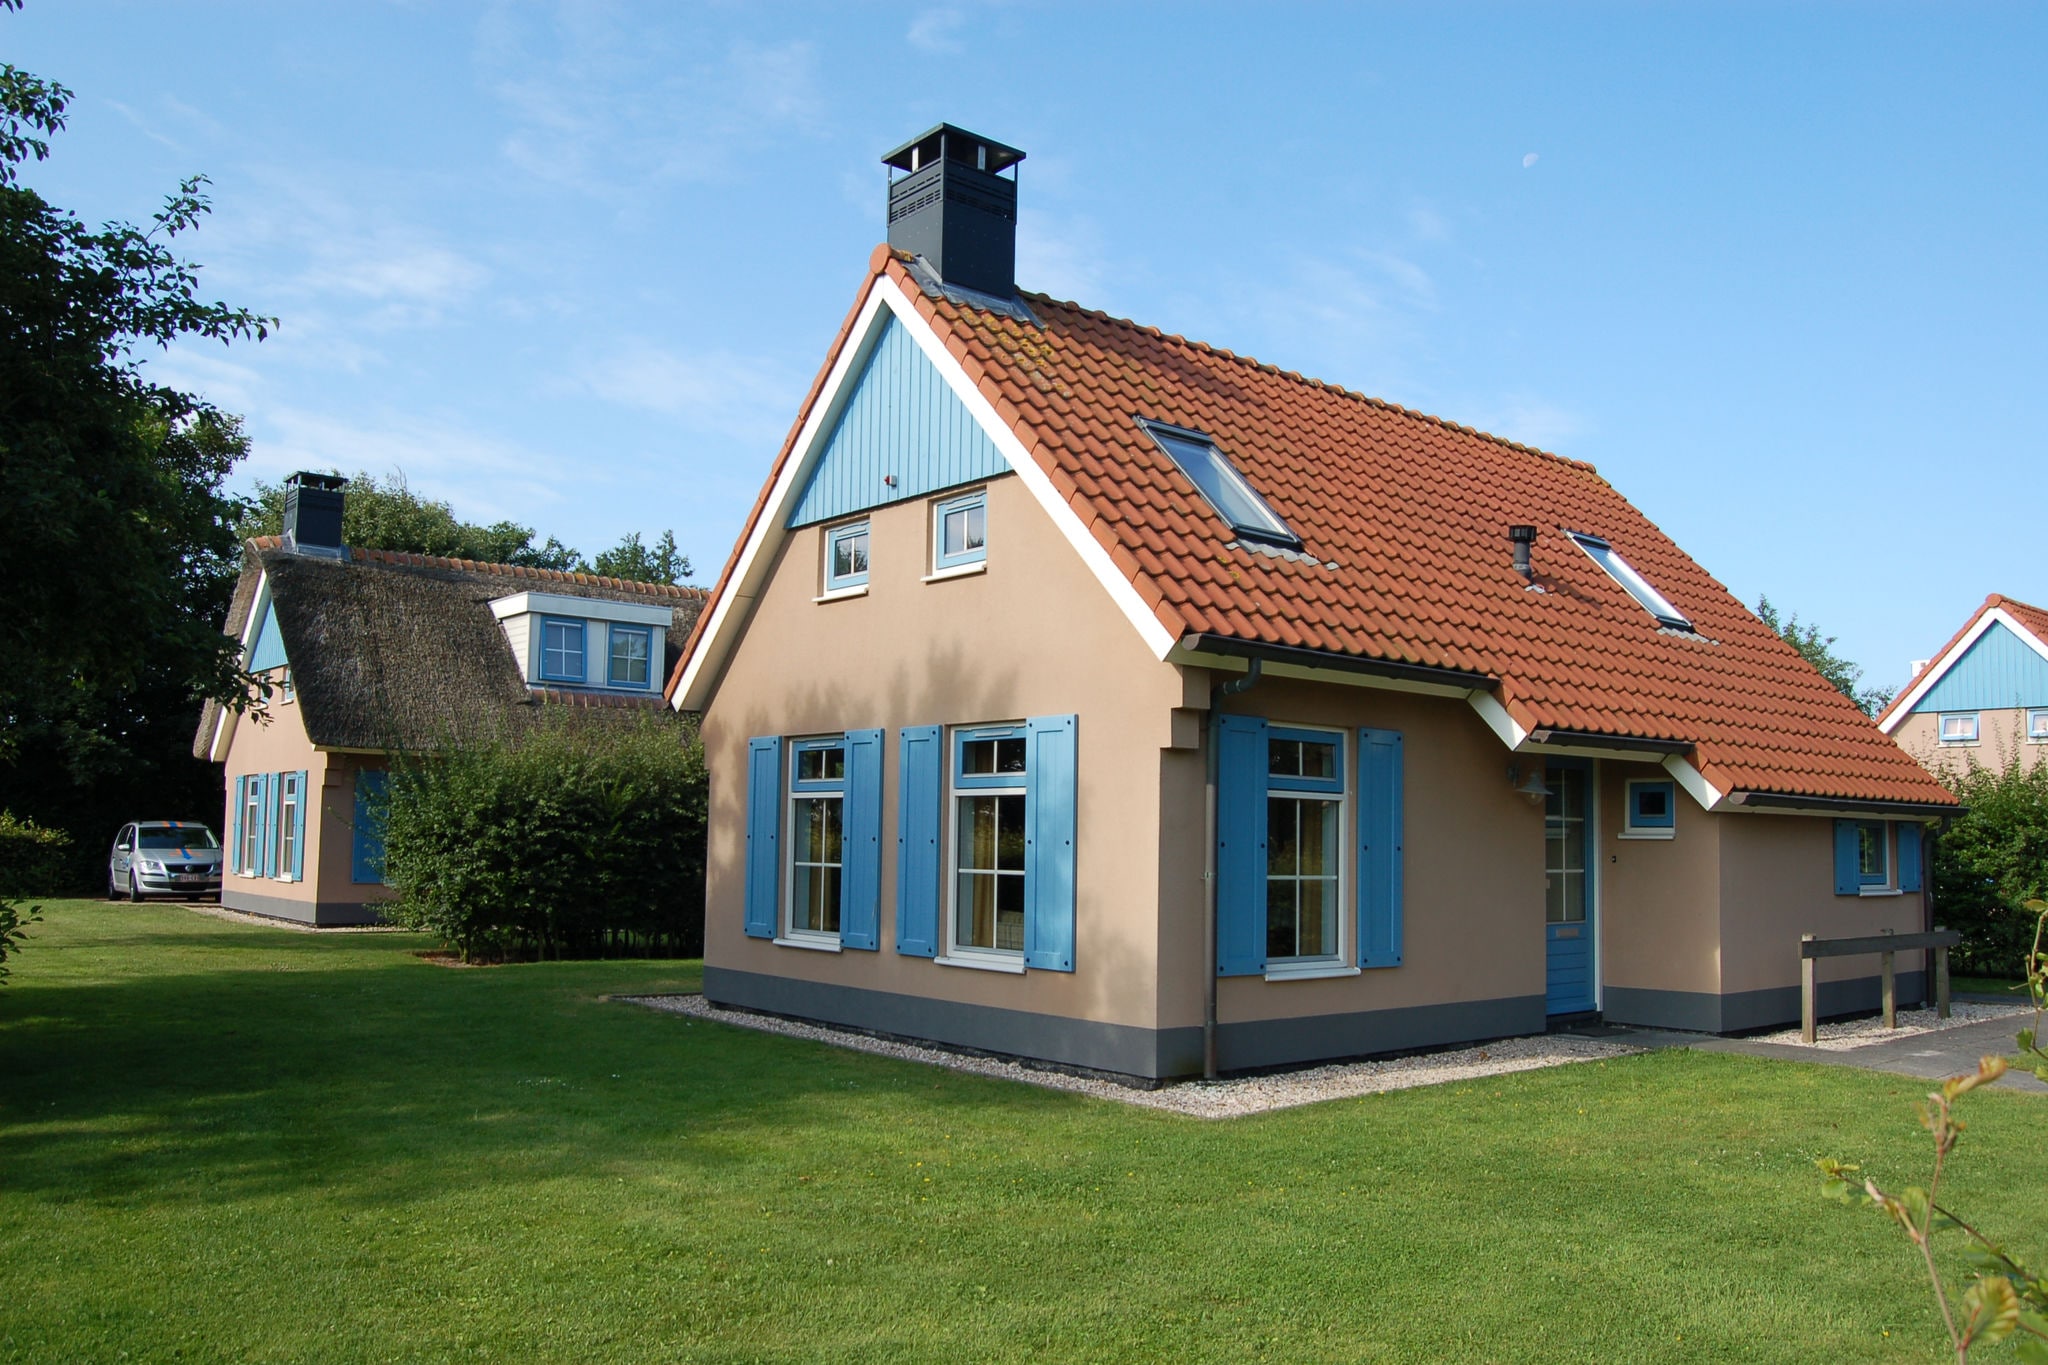 Villa mit Geschirrspüler, auf Texel, Meer 2 km entfernt